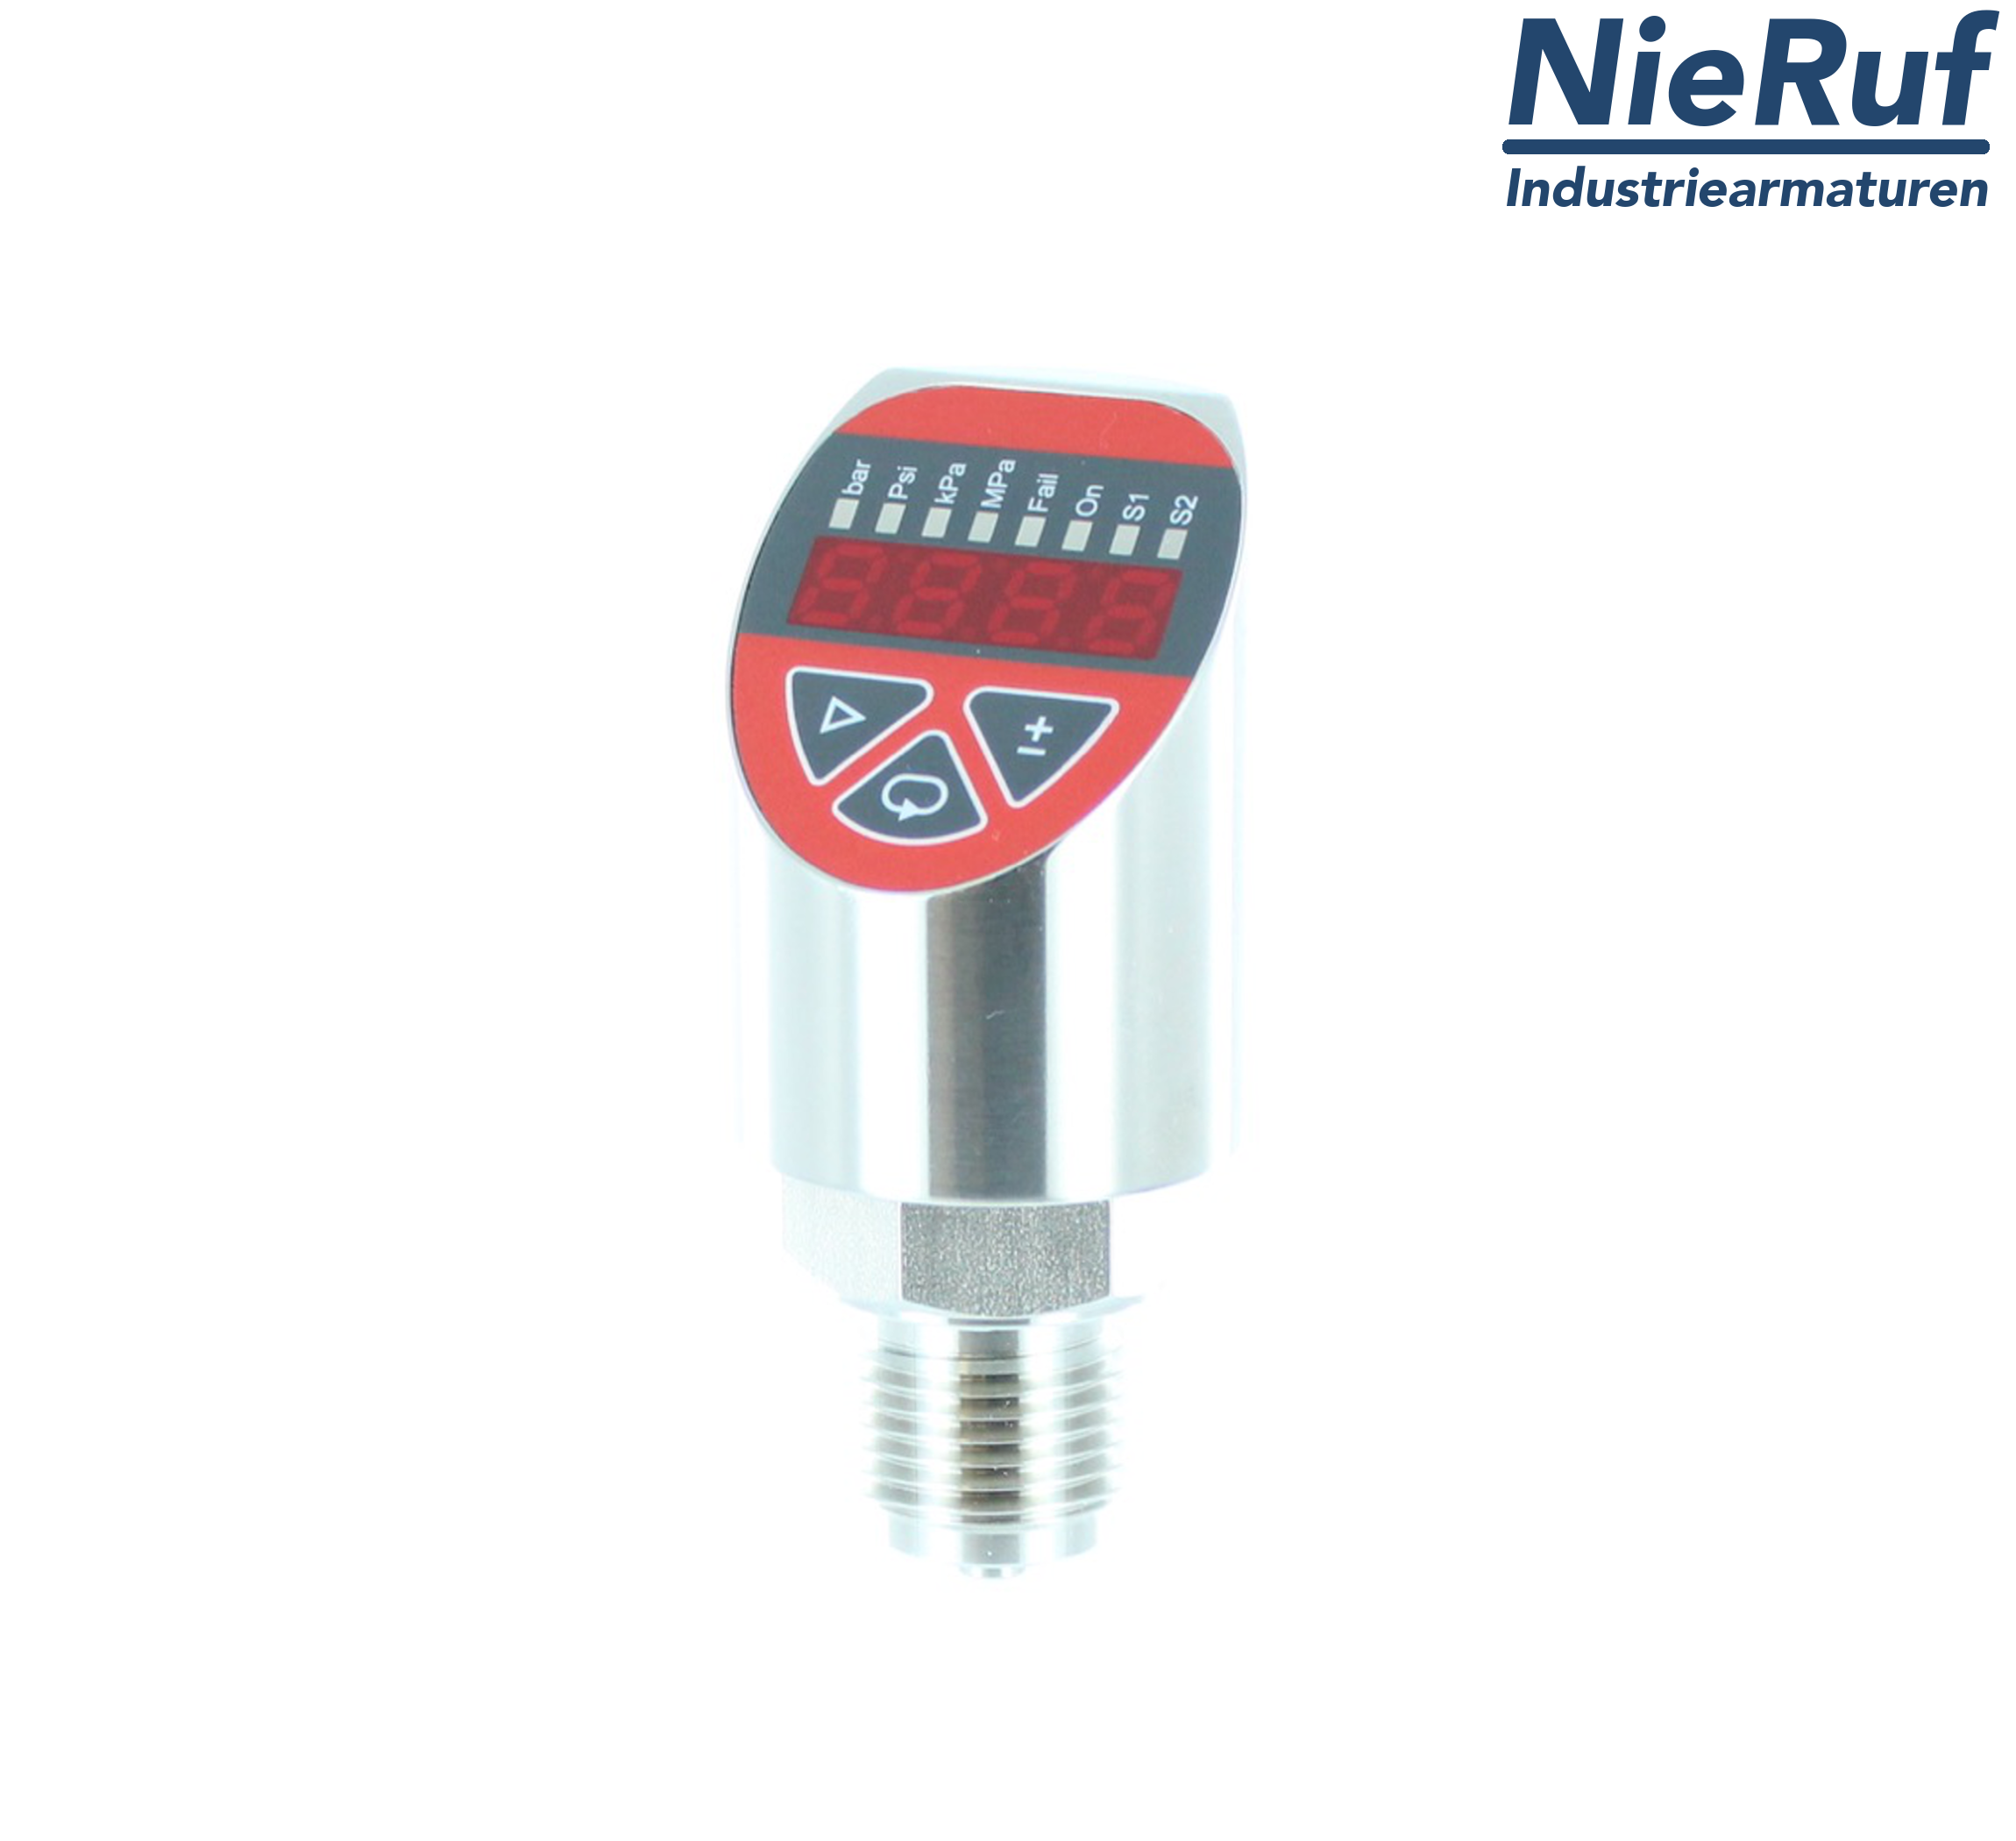 digital pressure sensor G 1/2" B IB 4-wire: 1xPNP, 1x4 - 20mA FPM 0,0 - 160,0 bar